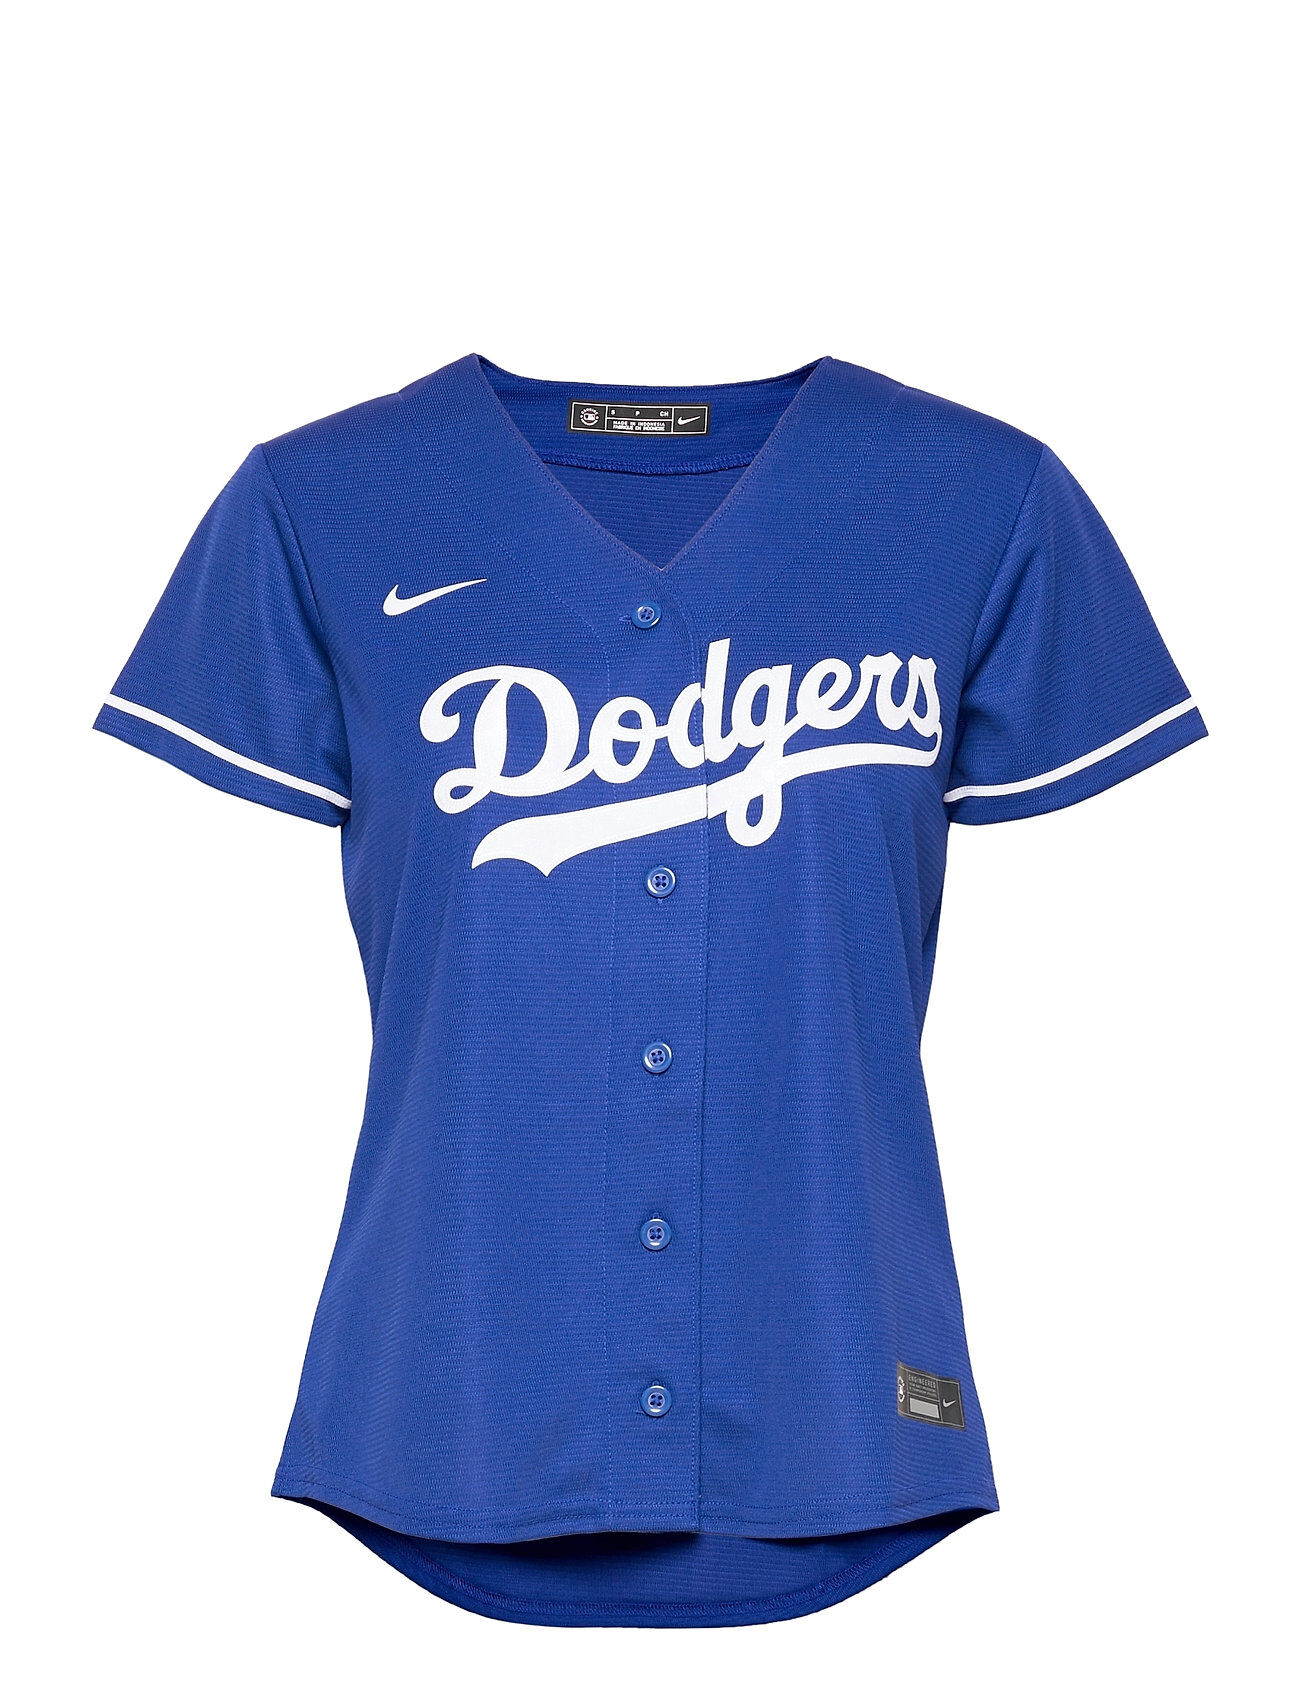 NIKE Fan Gear La Dodgers Nike Official Replica Alternate Jersey T-shirts & Tops Short-sleeved Blå NIKE Fan Gear